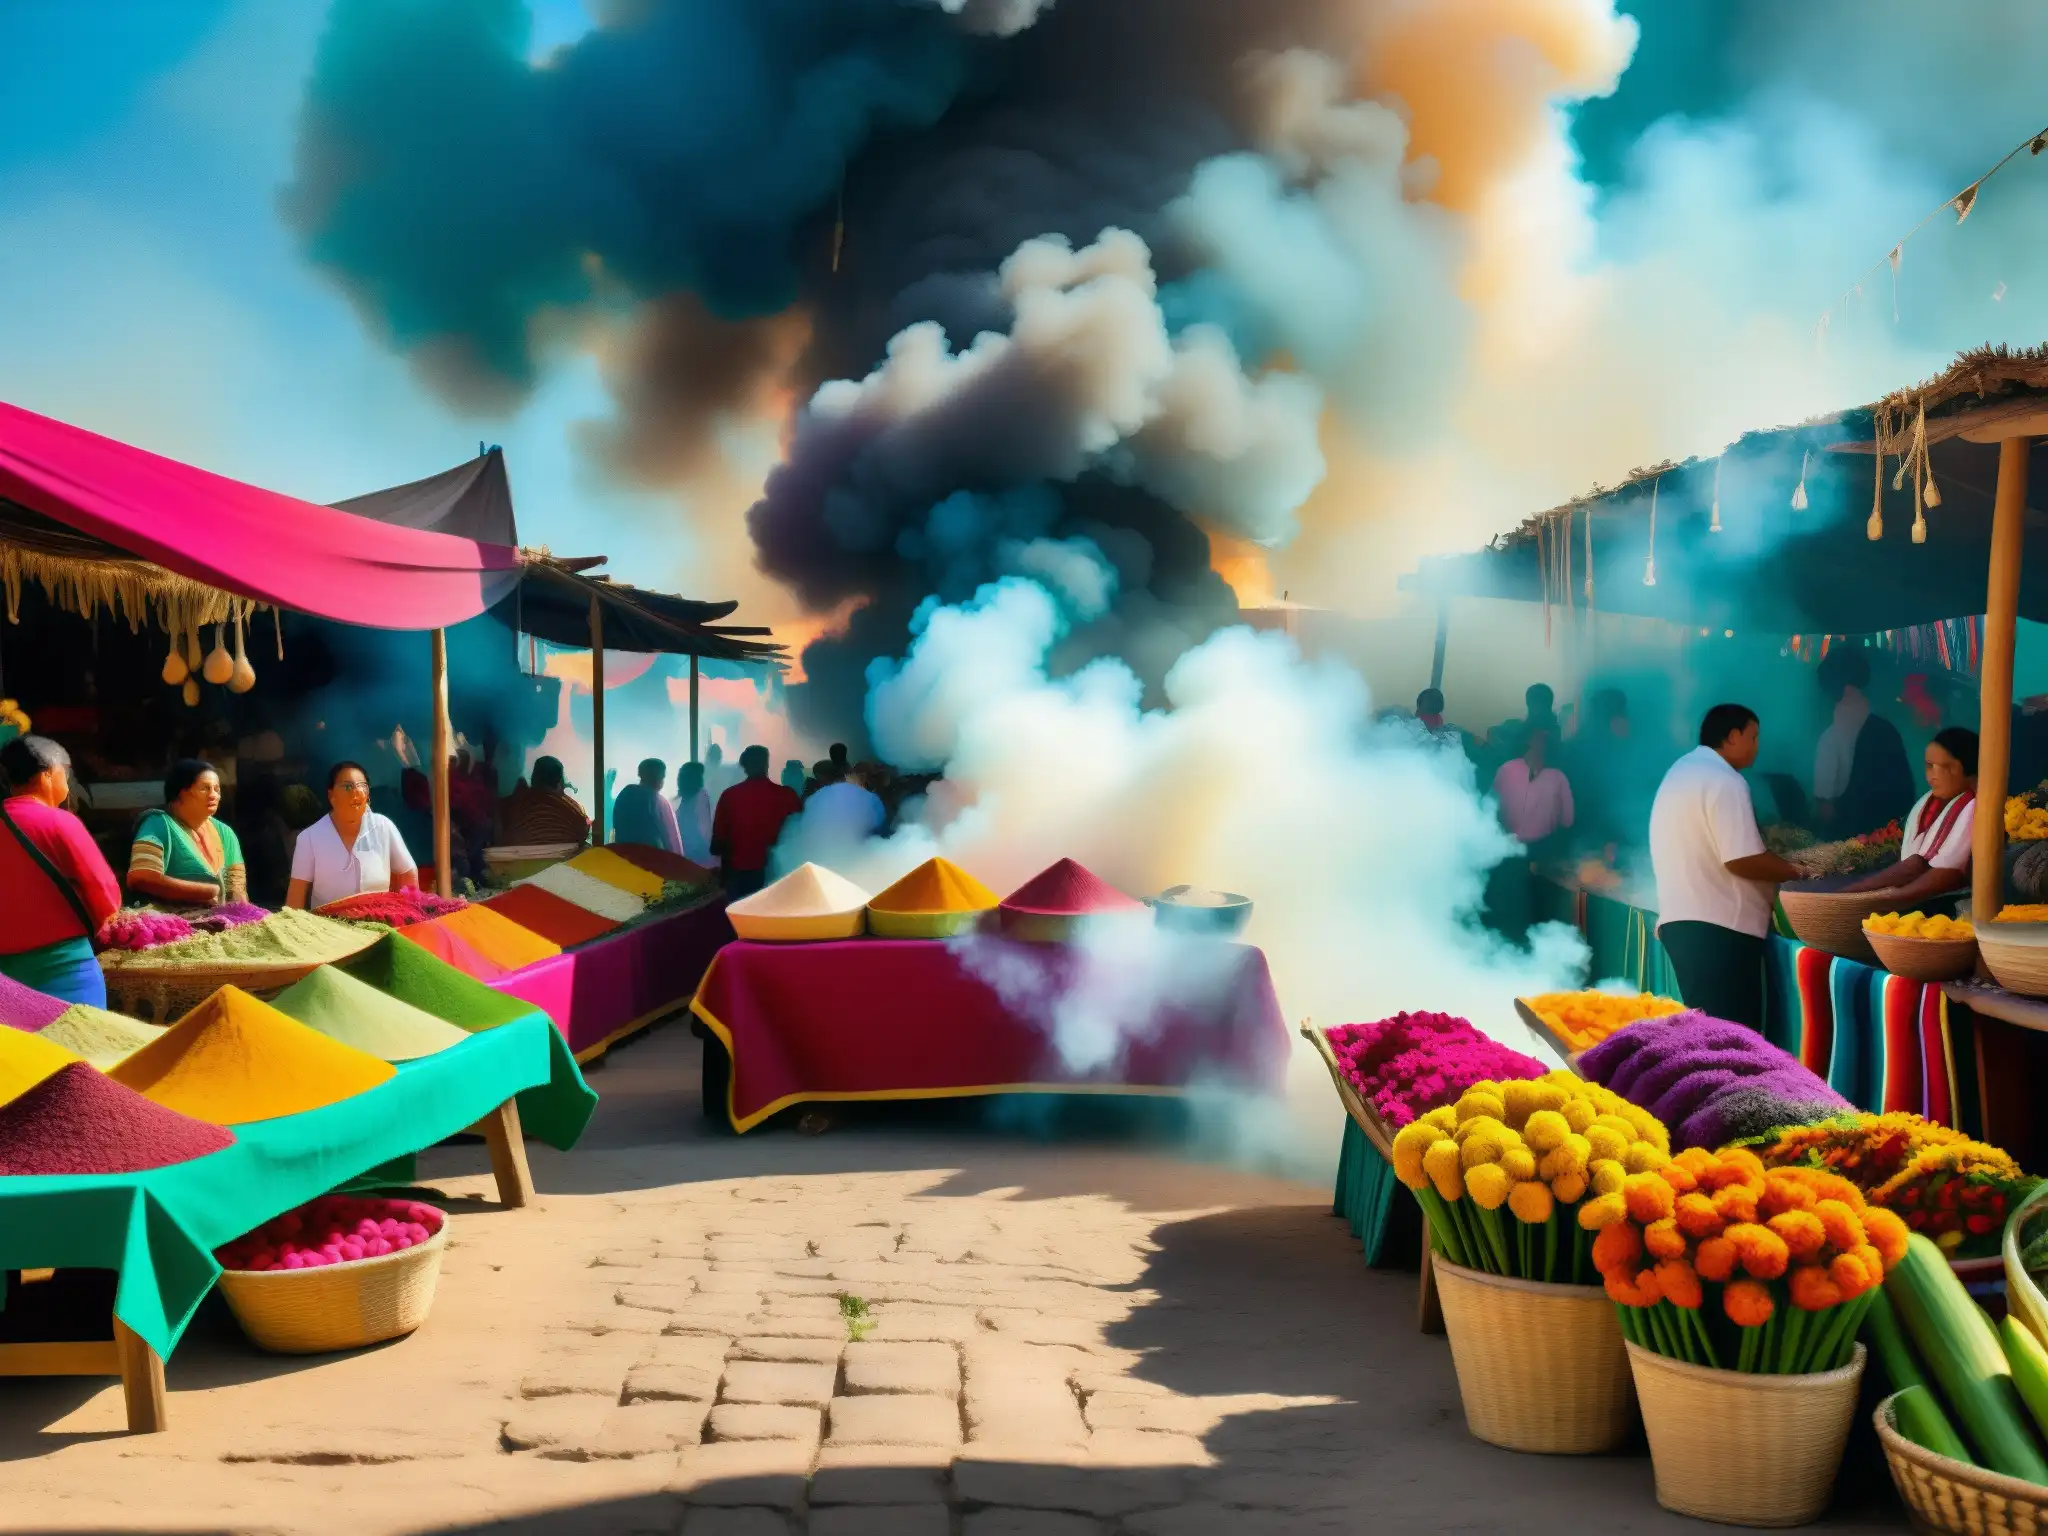 Un mercado mexicano tradicional bullicioso con vendedores y productos coloridos